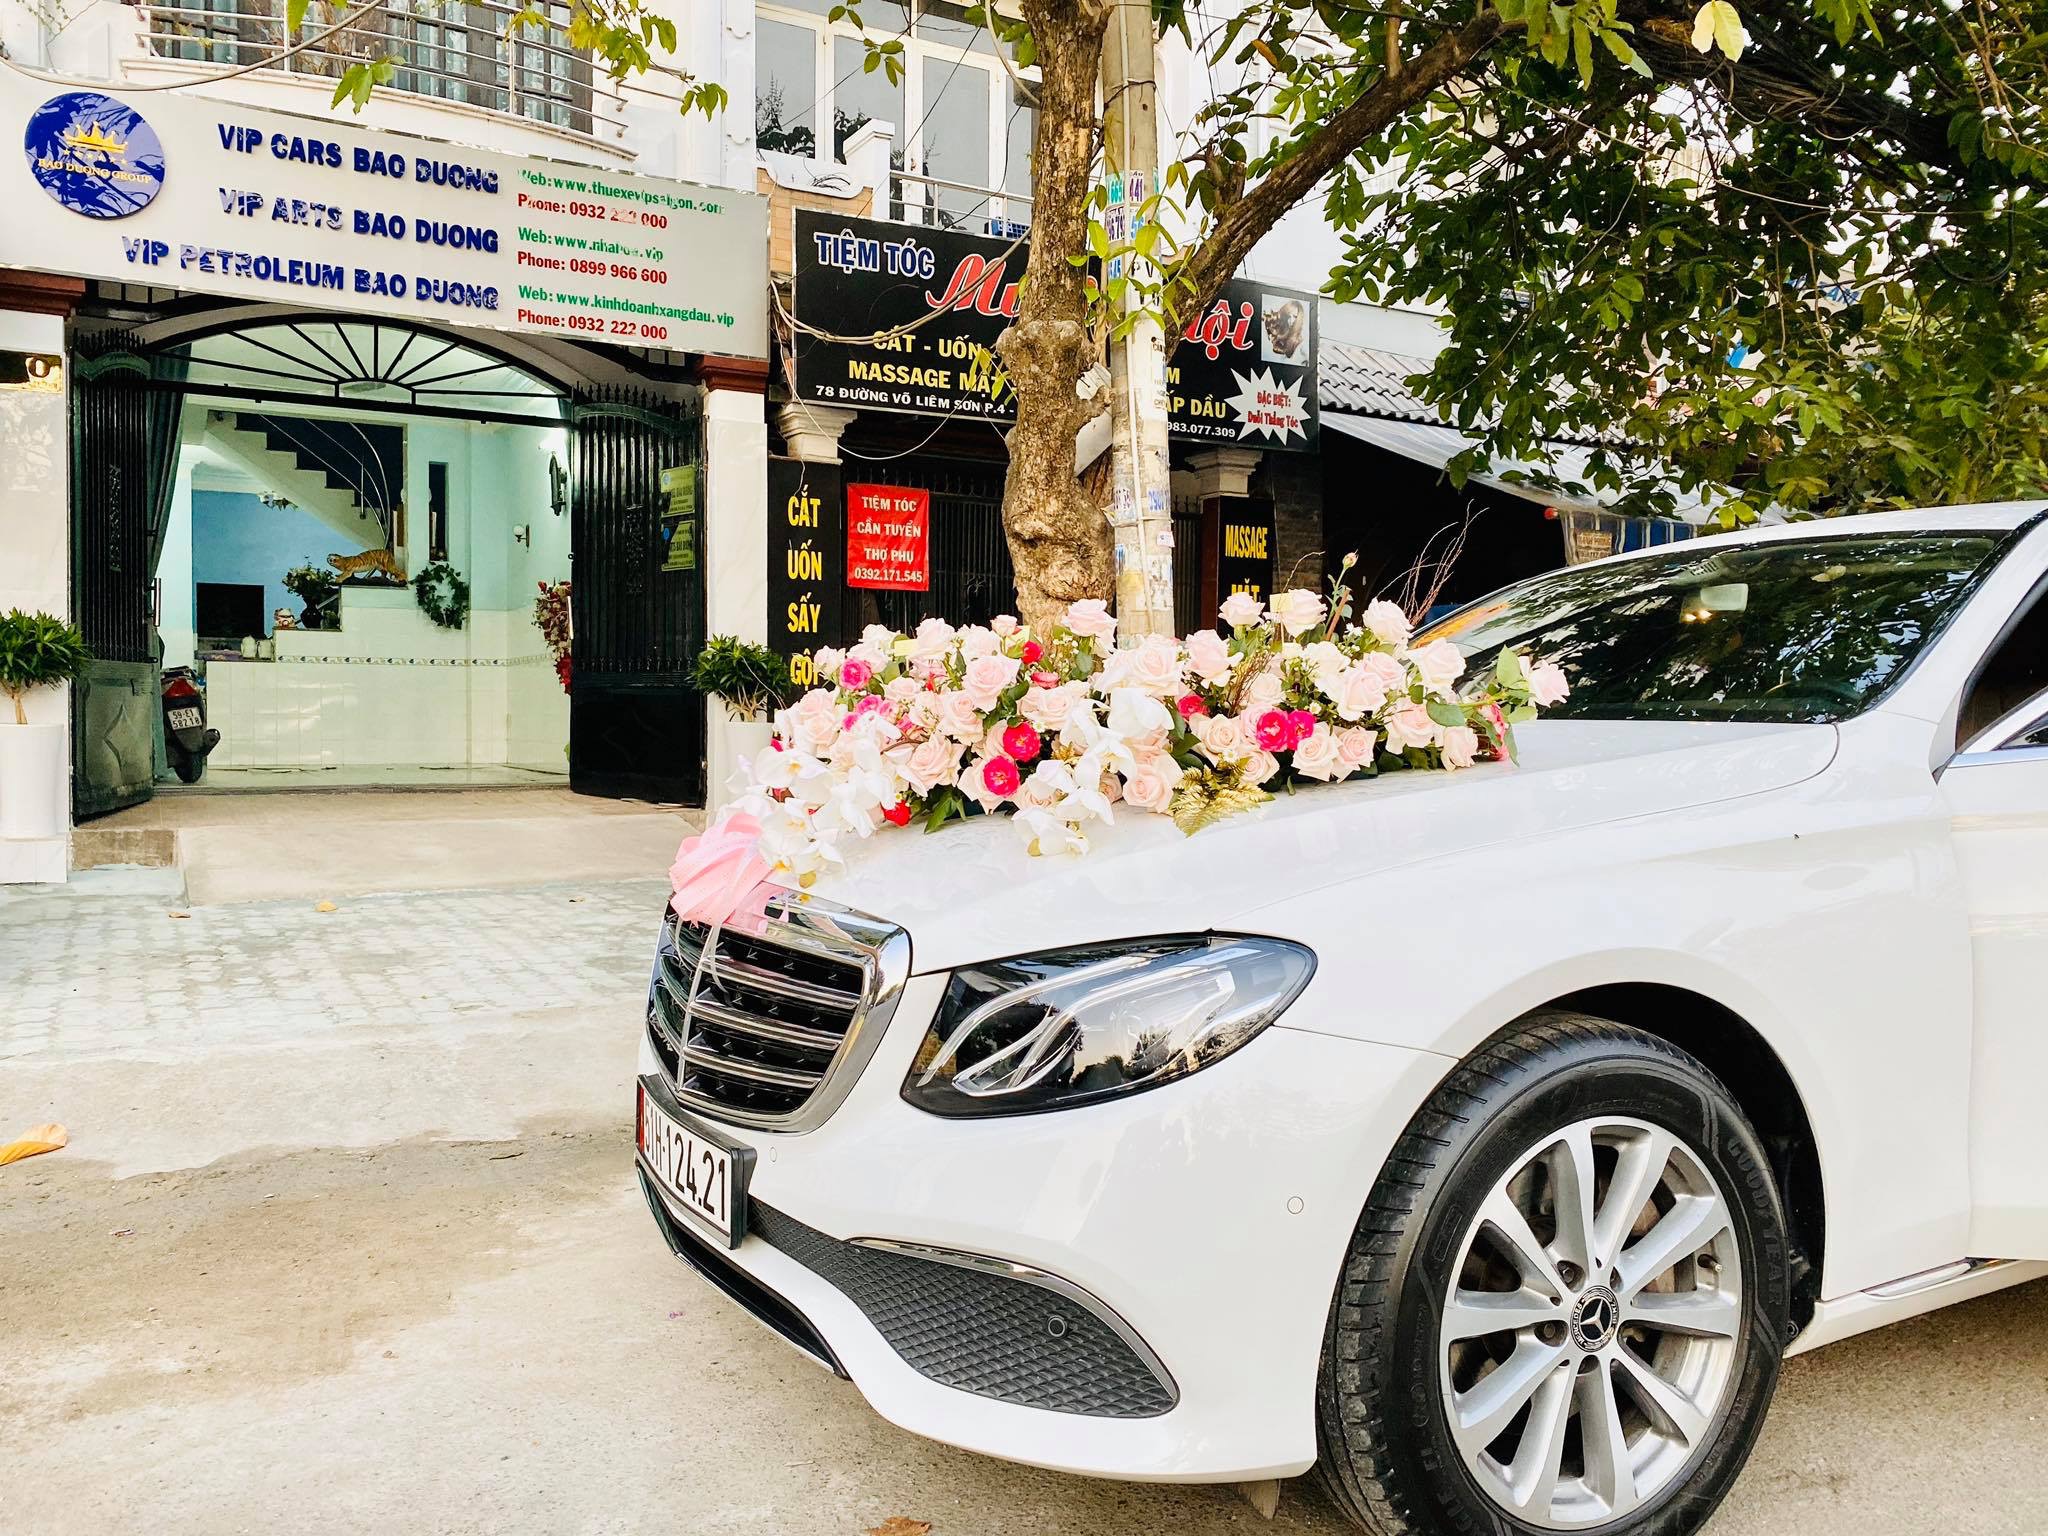 Vip Cars Bảo Dương cho thuê xe cưới Mercedes trang trí hoa tươi ngày 29/2/2020